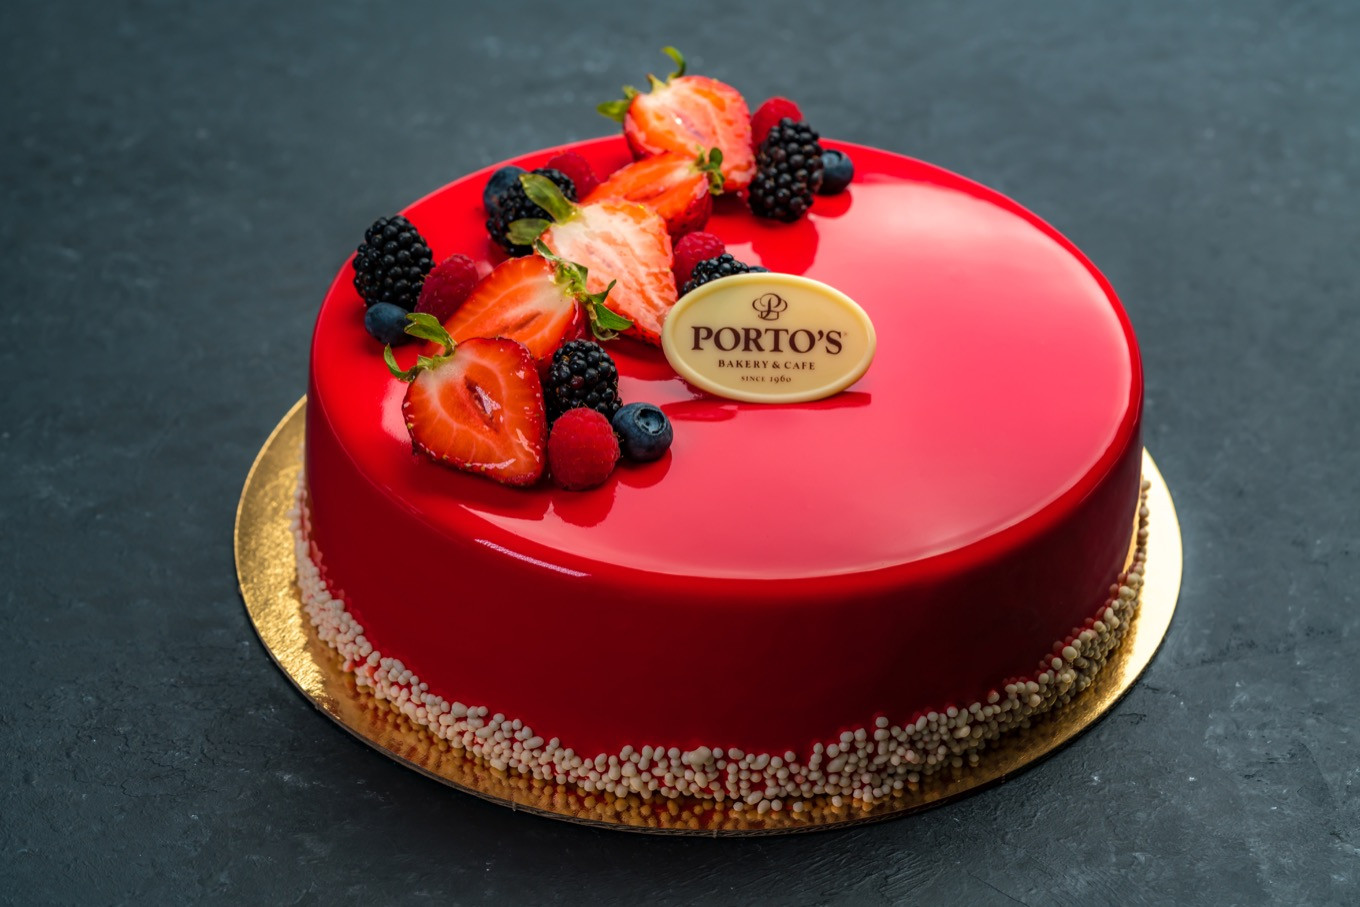 Portos Wedding Cakes Prices
 Strawberry Bavarian Mousse 9" Porto s Bakery